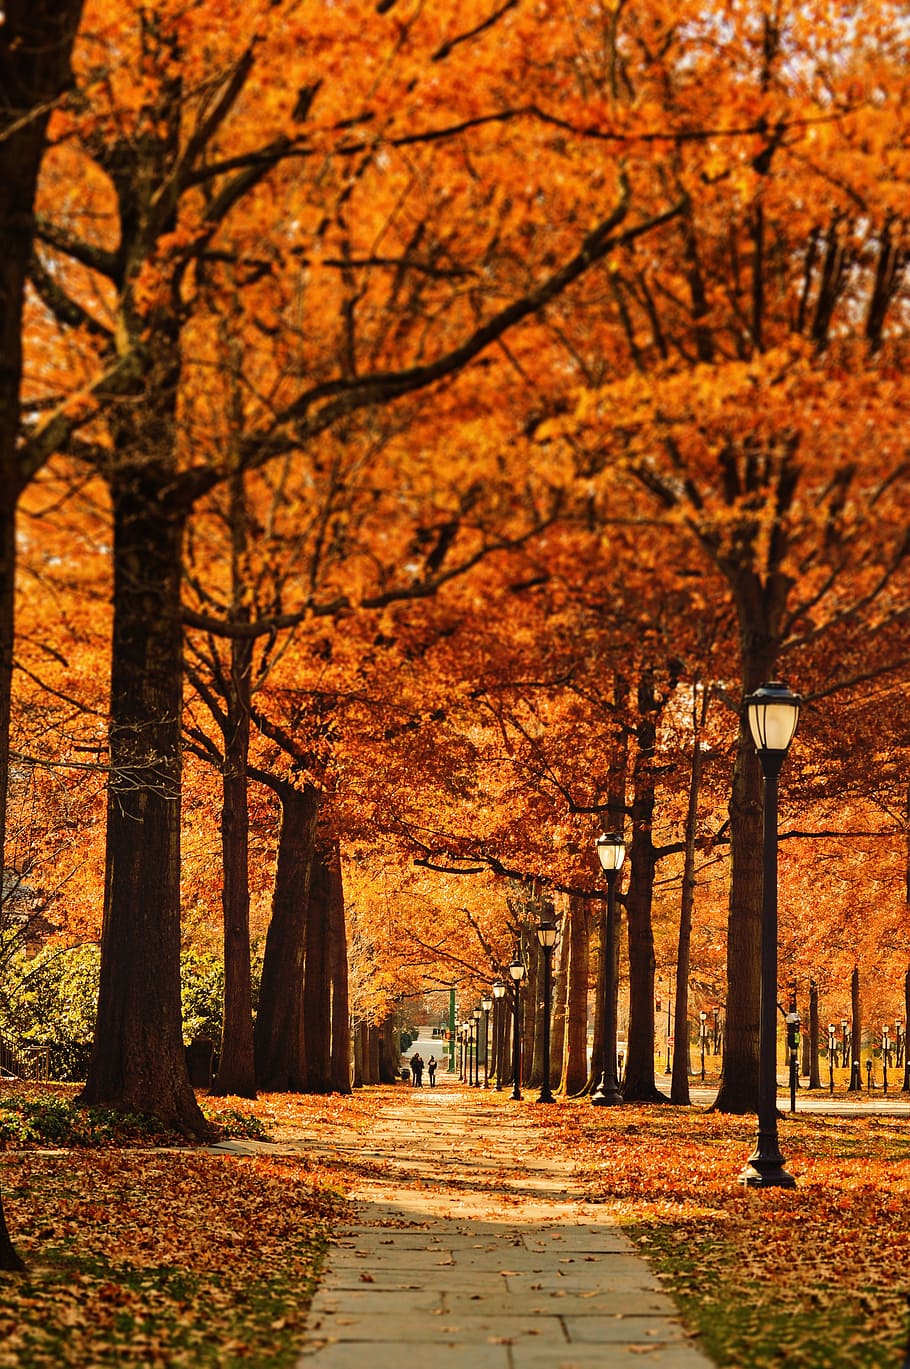 dois, pessoa, acordando, rua, foto, outono, estação, caminho, folha, árvores